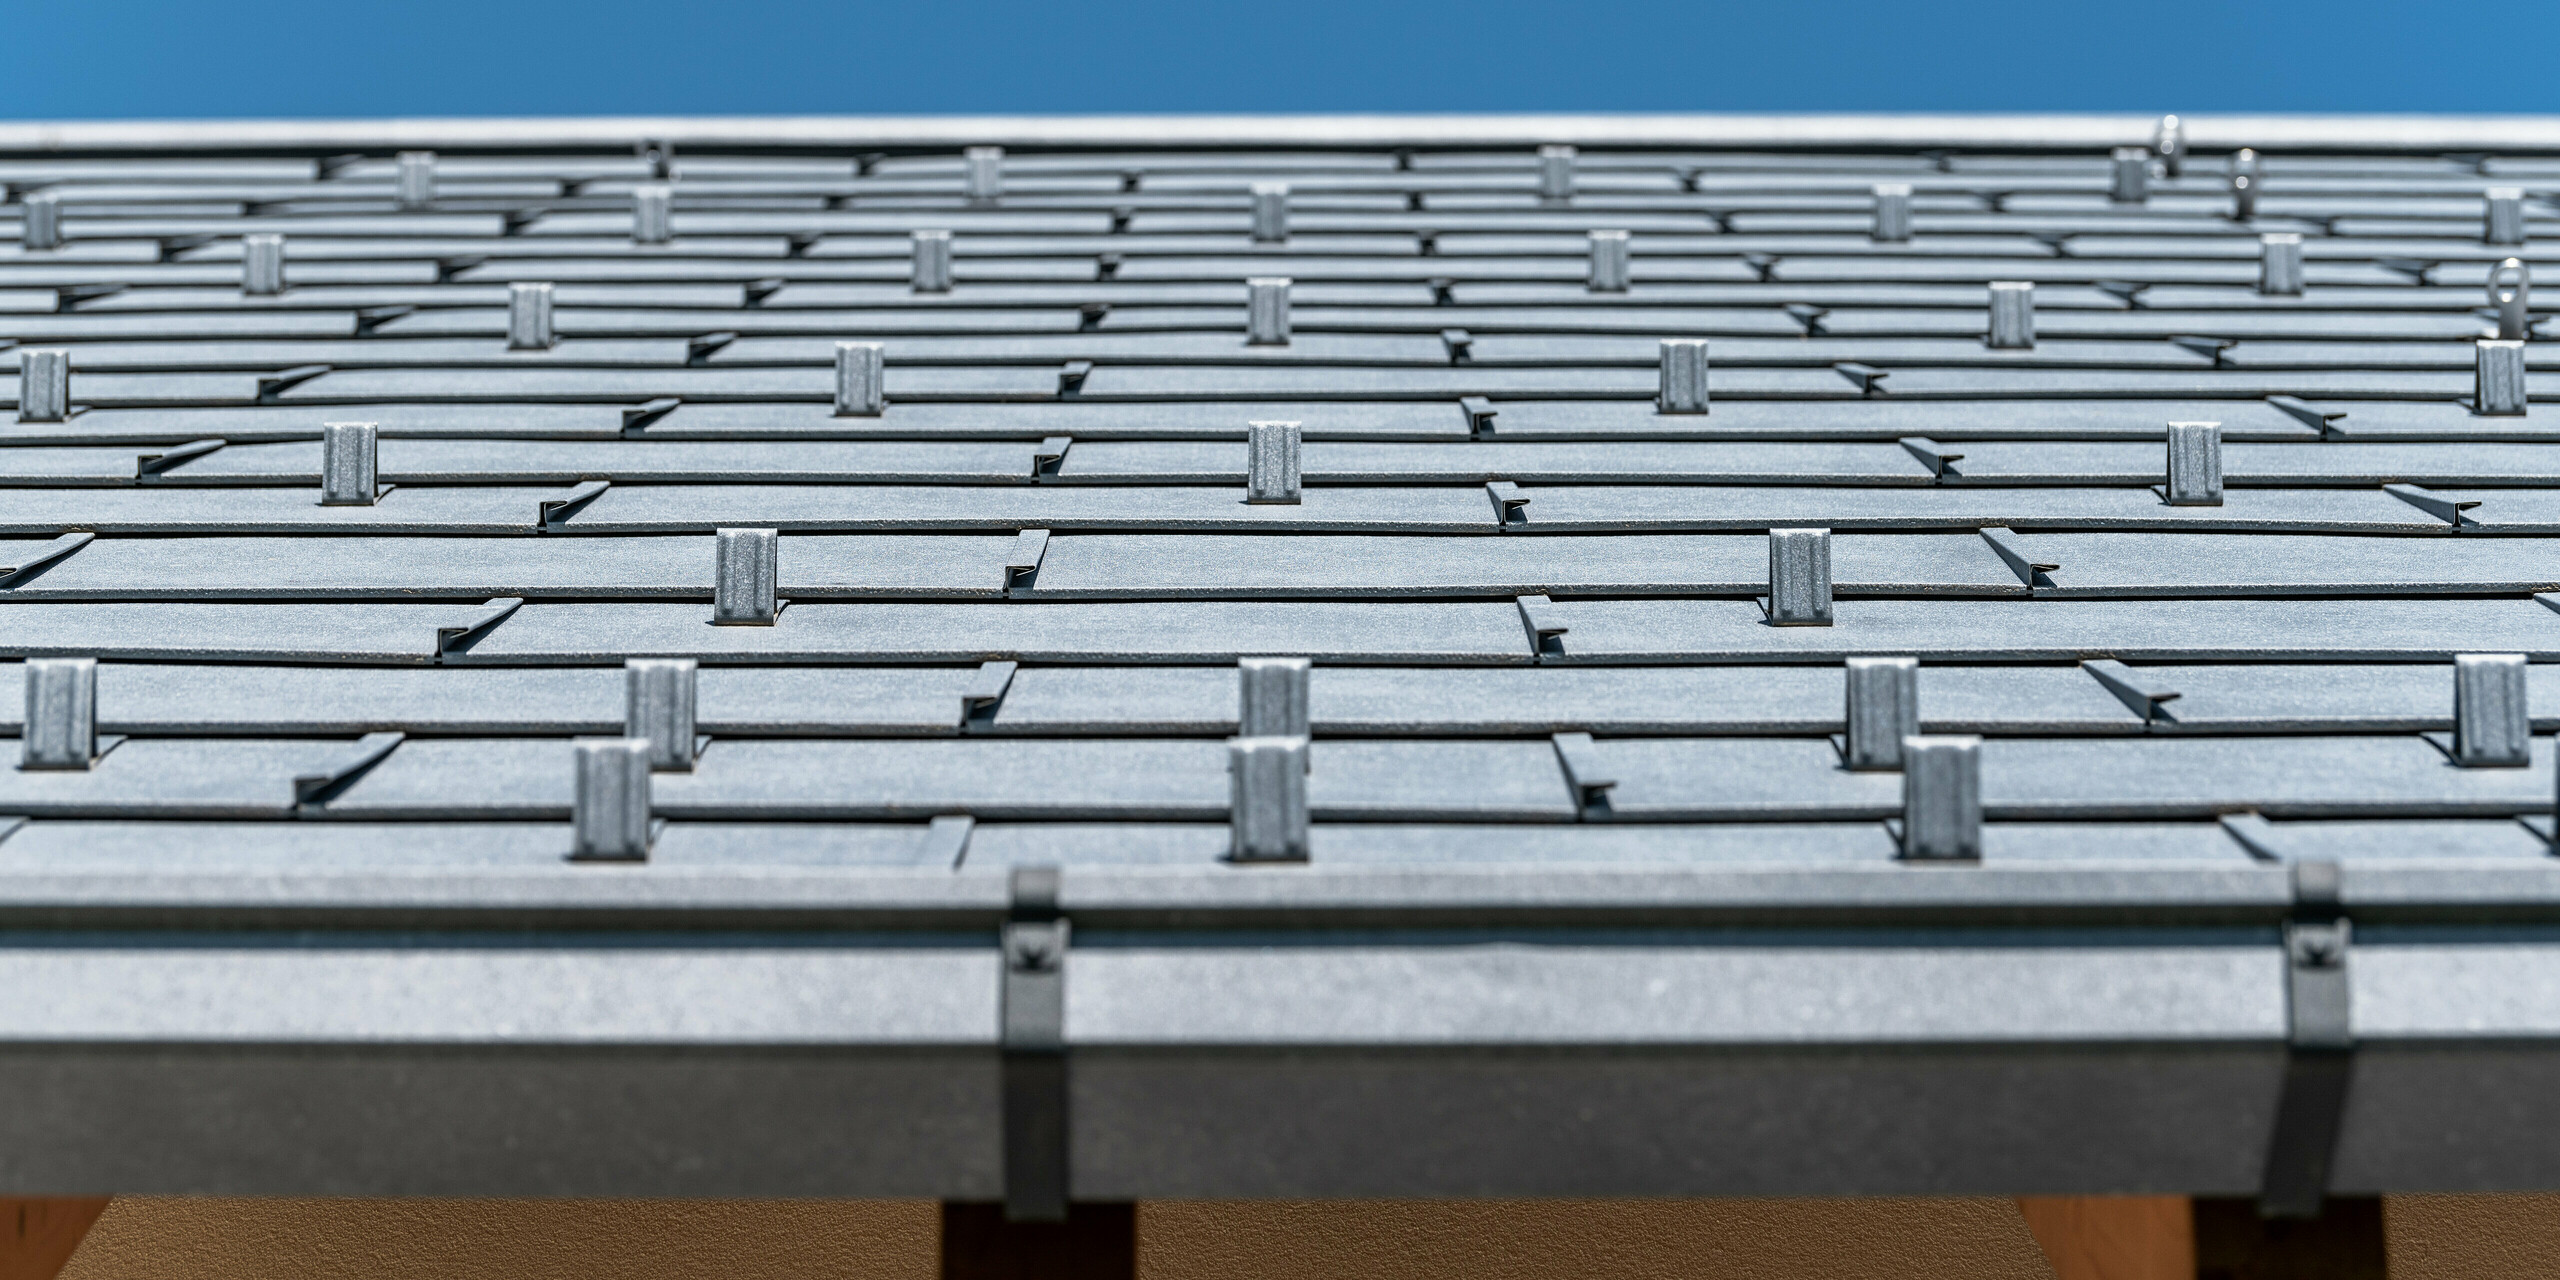 Detailný pohľad na strechu PREFA pokrytú strešným panelom R.16 vo farbe P.10 antracit. Na obrázku sú precízne spracované hliníkové strešné panely. Záber vyzdvihuje nápadnú štruktúru a moderný dizajn strechy, ktorý kontrastuje s jasne modrou oblohou a podčiarkuje inovatívne a odolné riešenie zastrešenia PREFA.